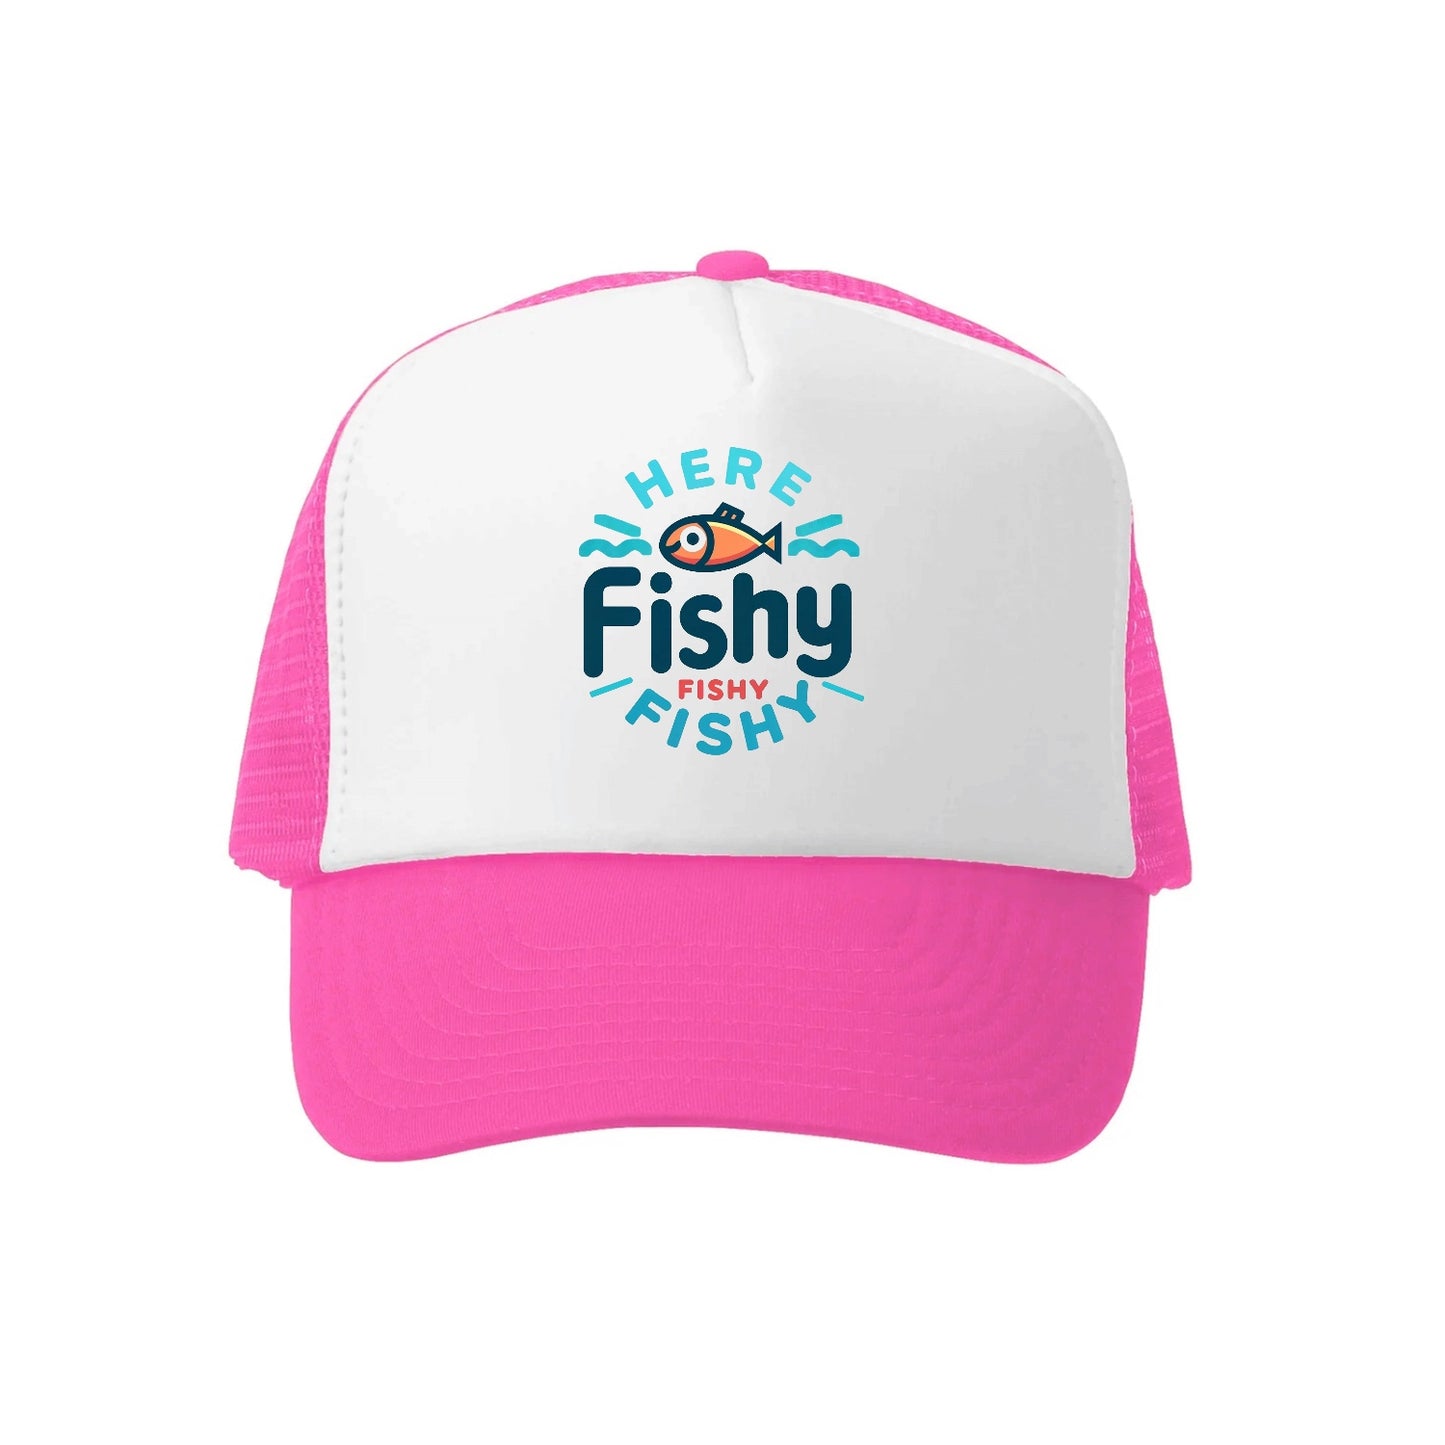 here fishy fishy fishy Hat